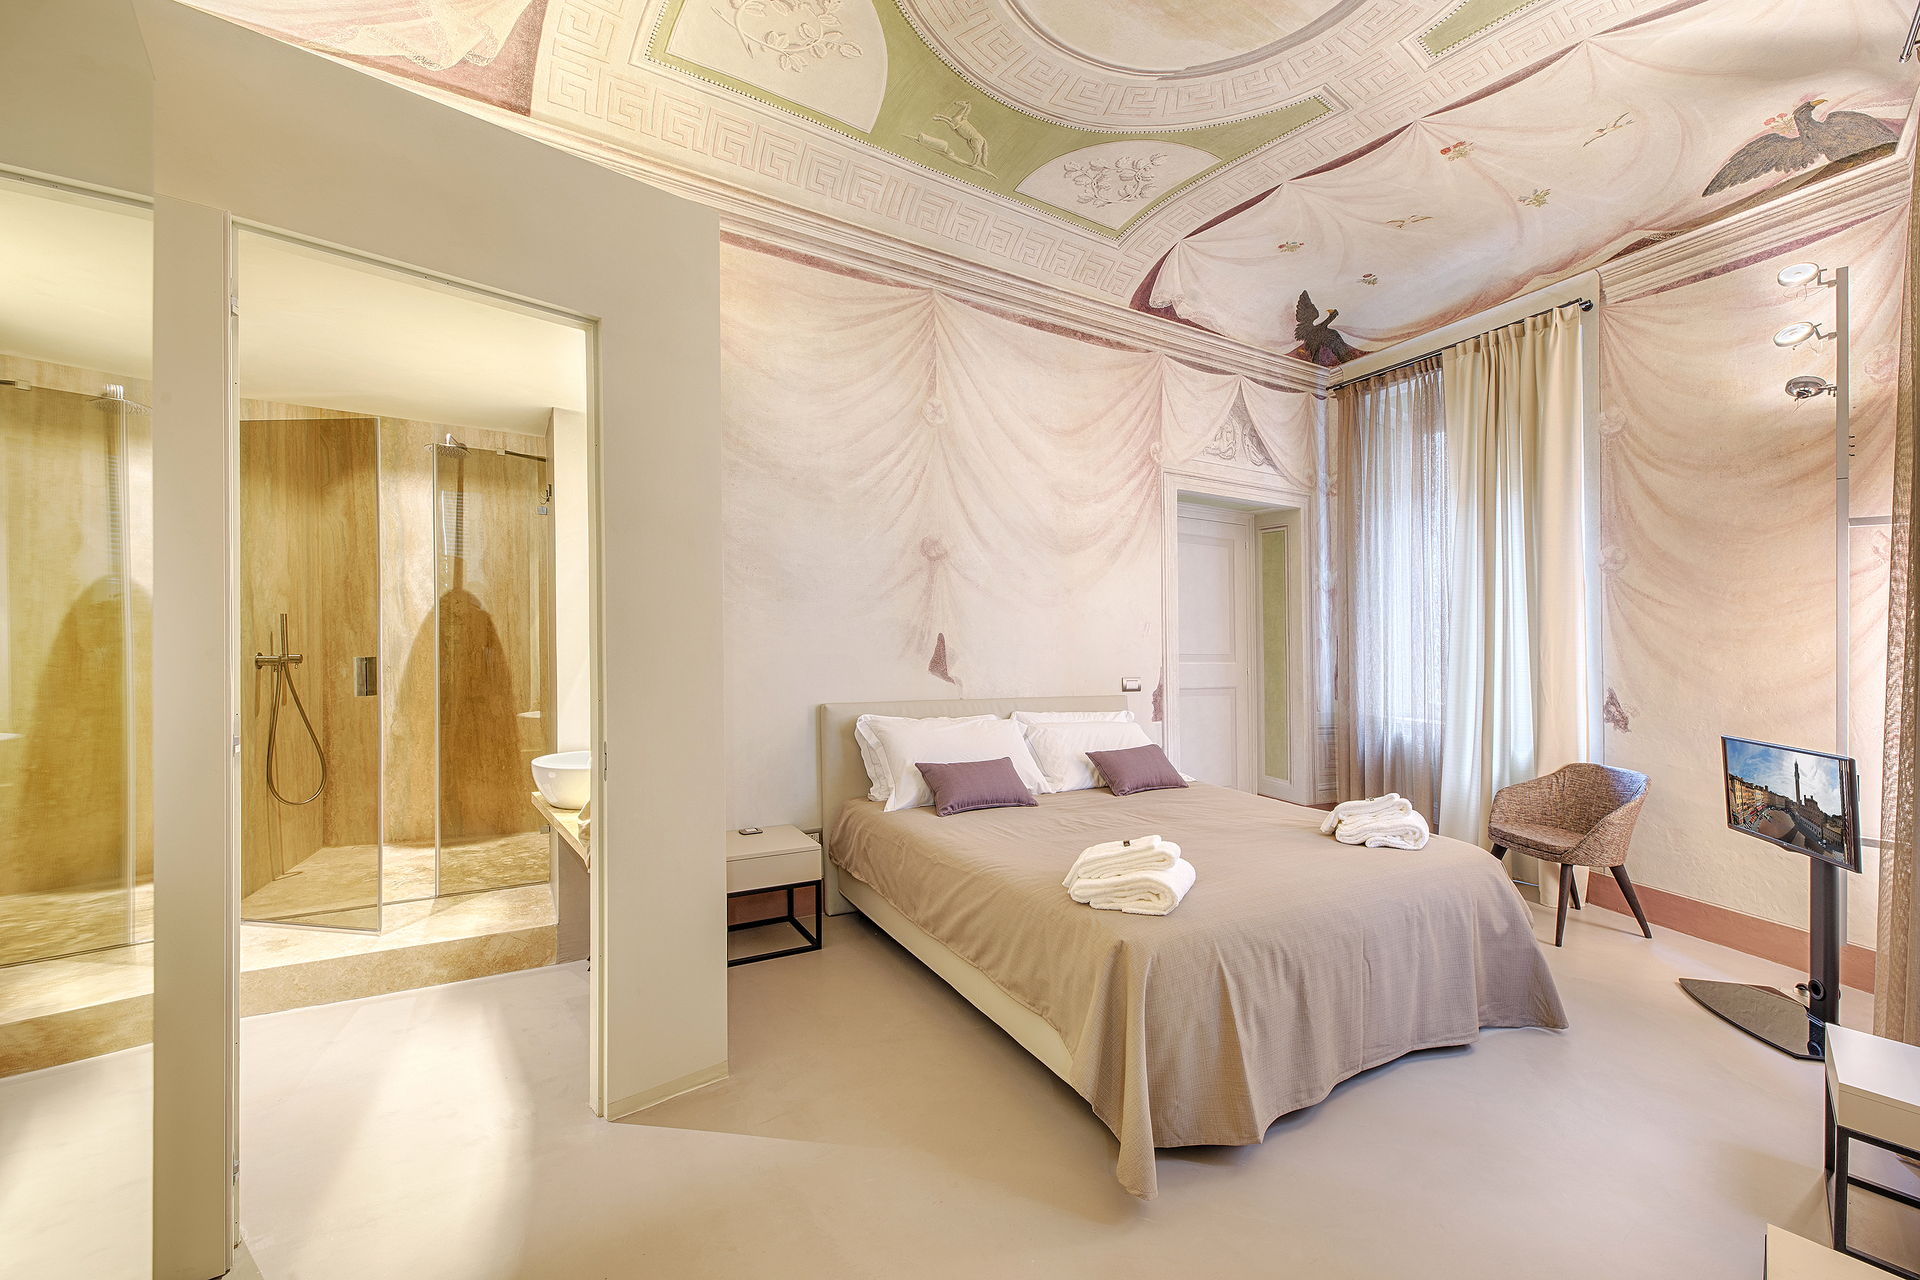 Residenza d'epoca Le Aquile - Bed and Breakfast luxury nel centro di Siena 1